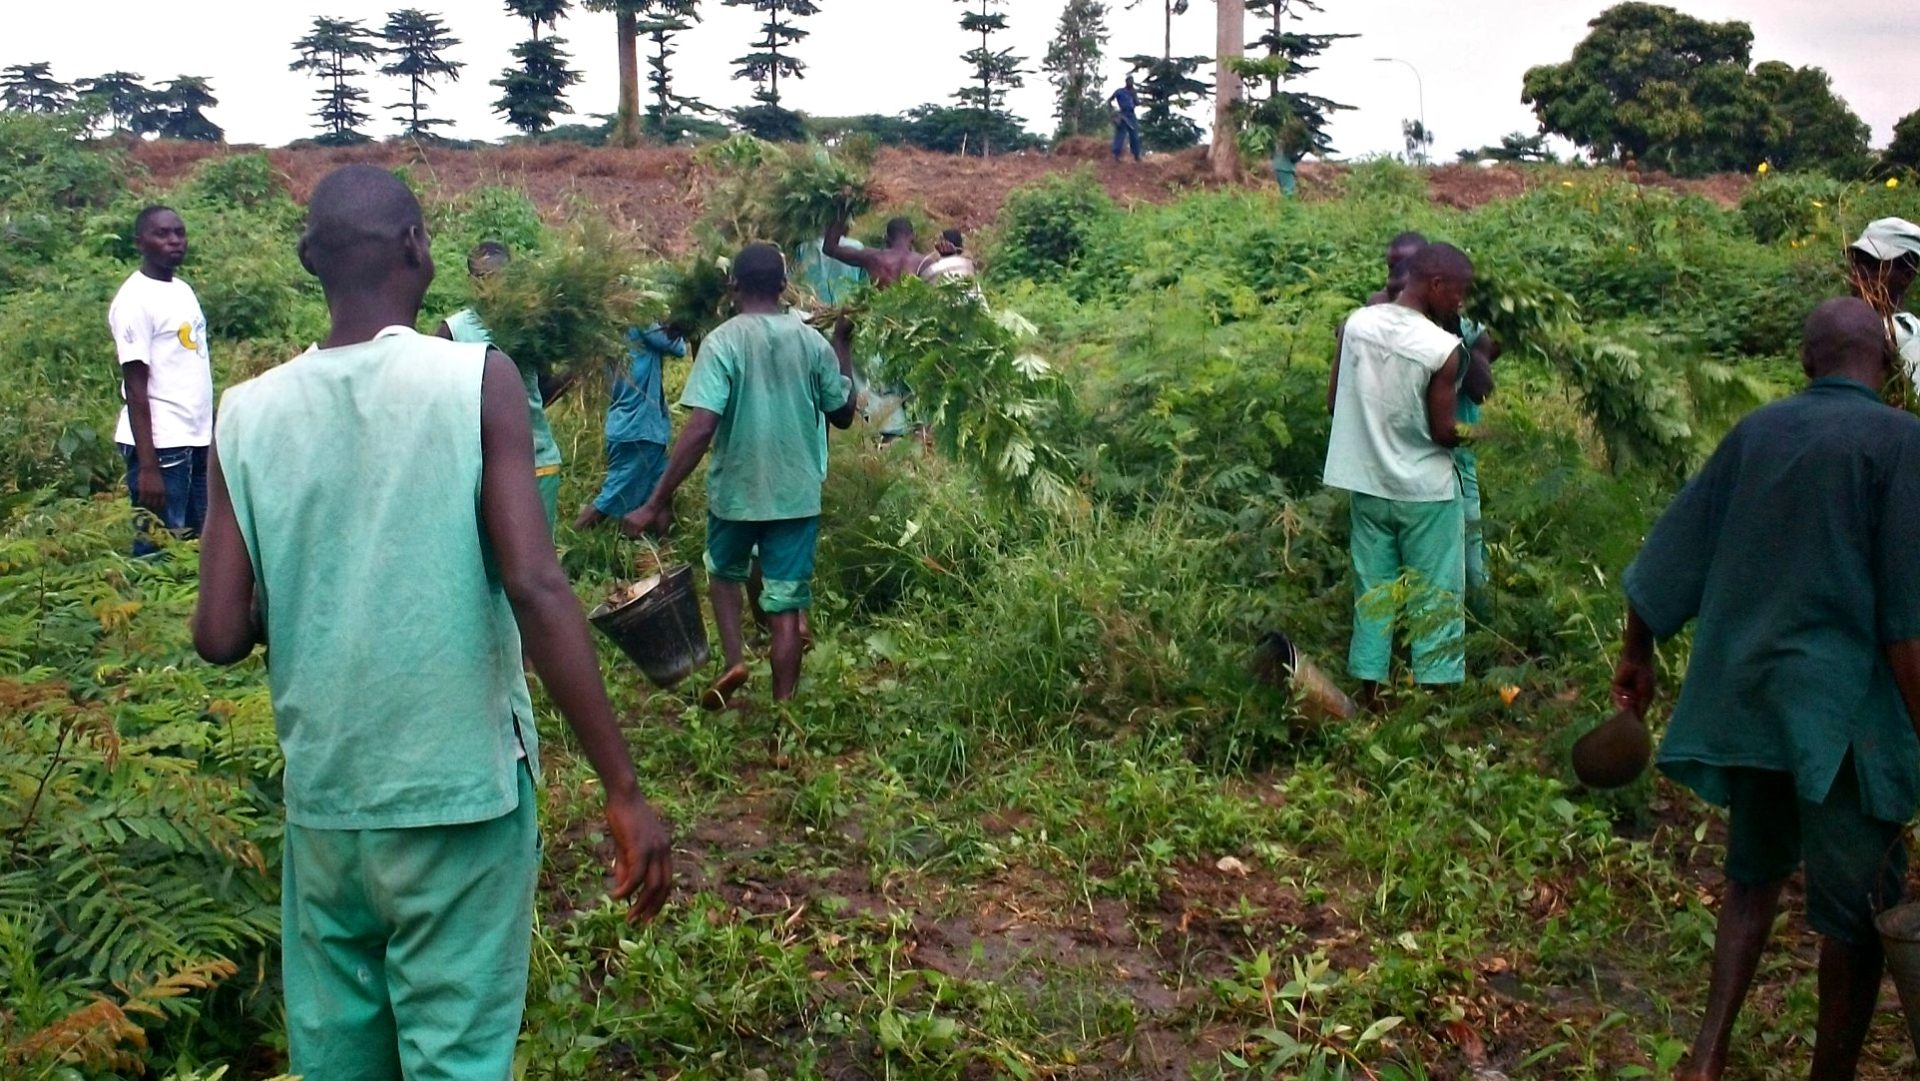 Il y aurait près de 10'000 prisonniers politiques au Burundi (Photo d'illustration: TreesFortheFuture/Flickr/CC BY 2.0)